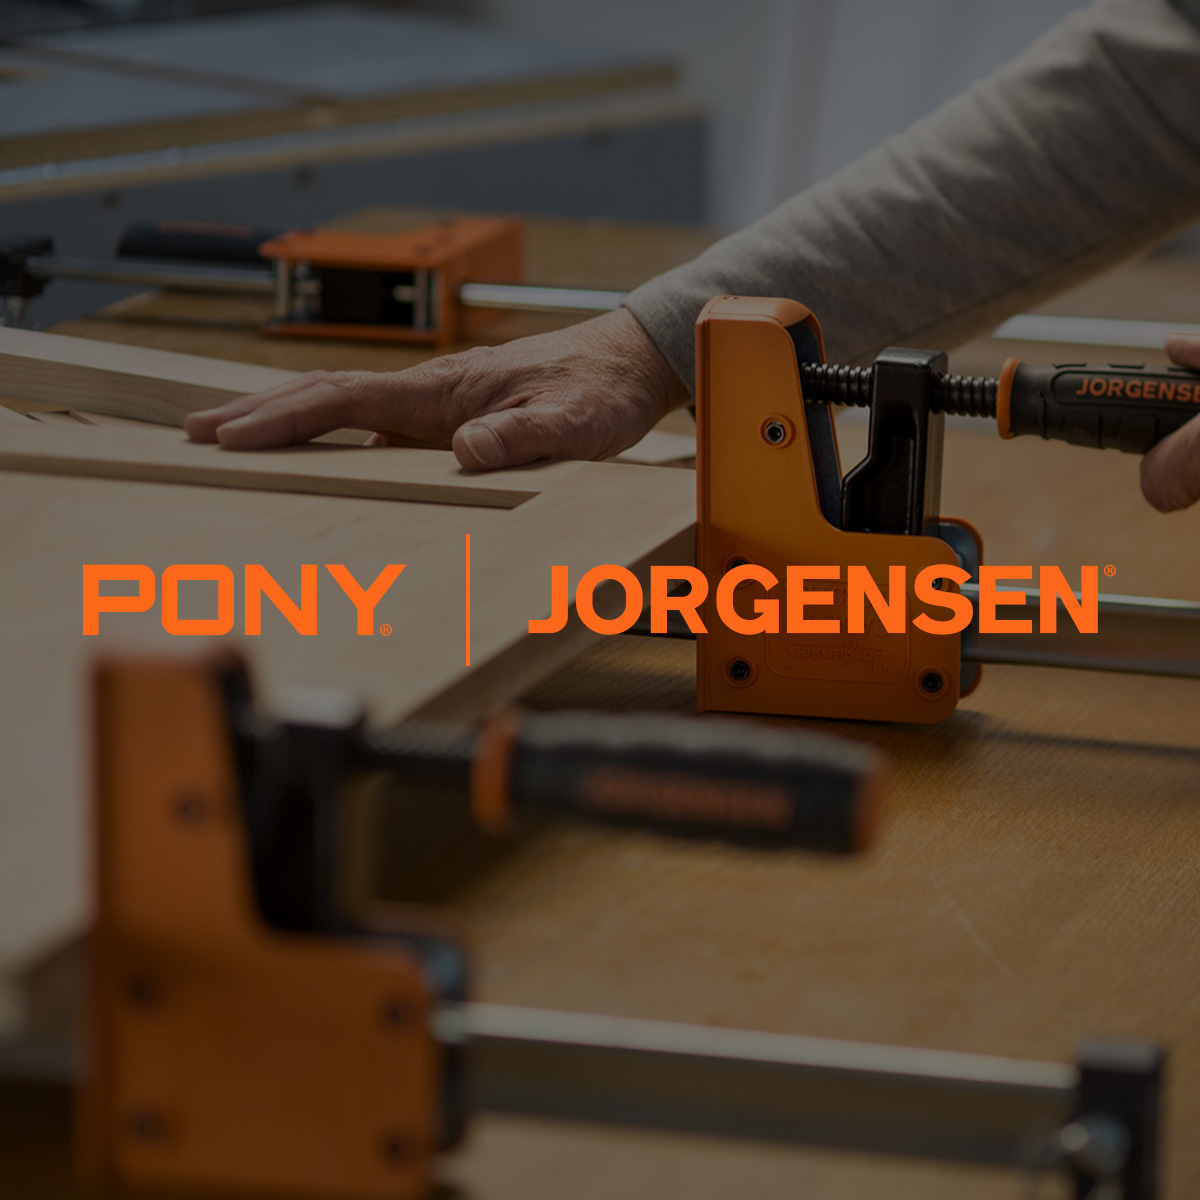 Pony Jorgensen